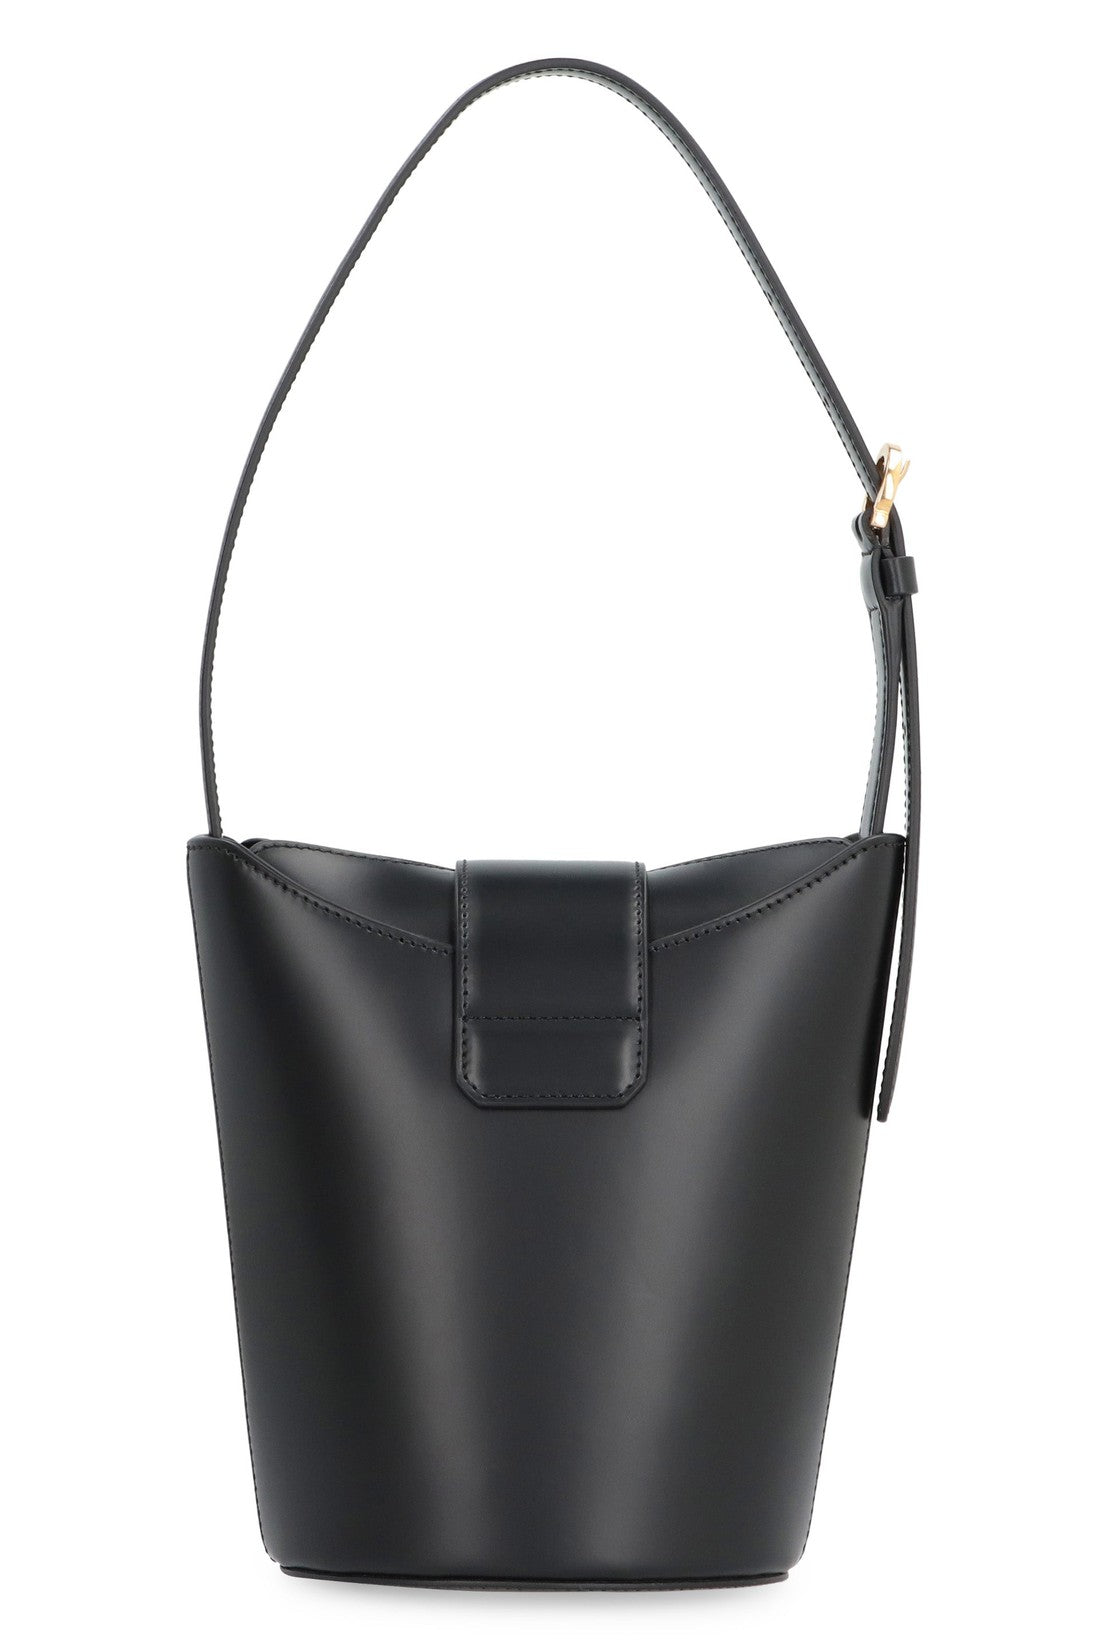 FERRAGAMO-OUTLET-SALE-Trifolio leather shoulder bag-ARCHIVIST